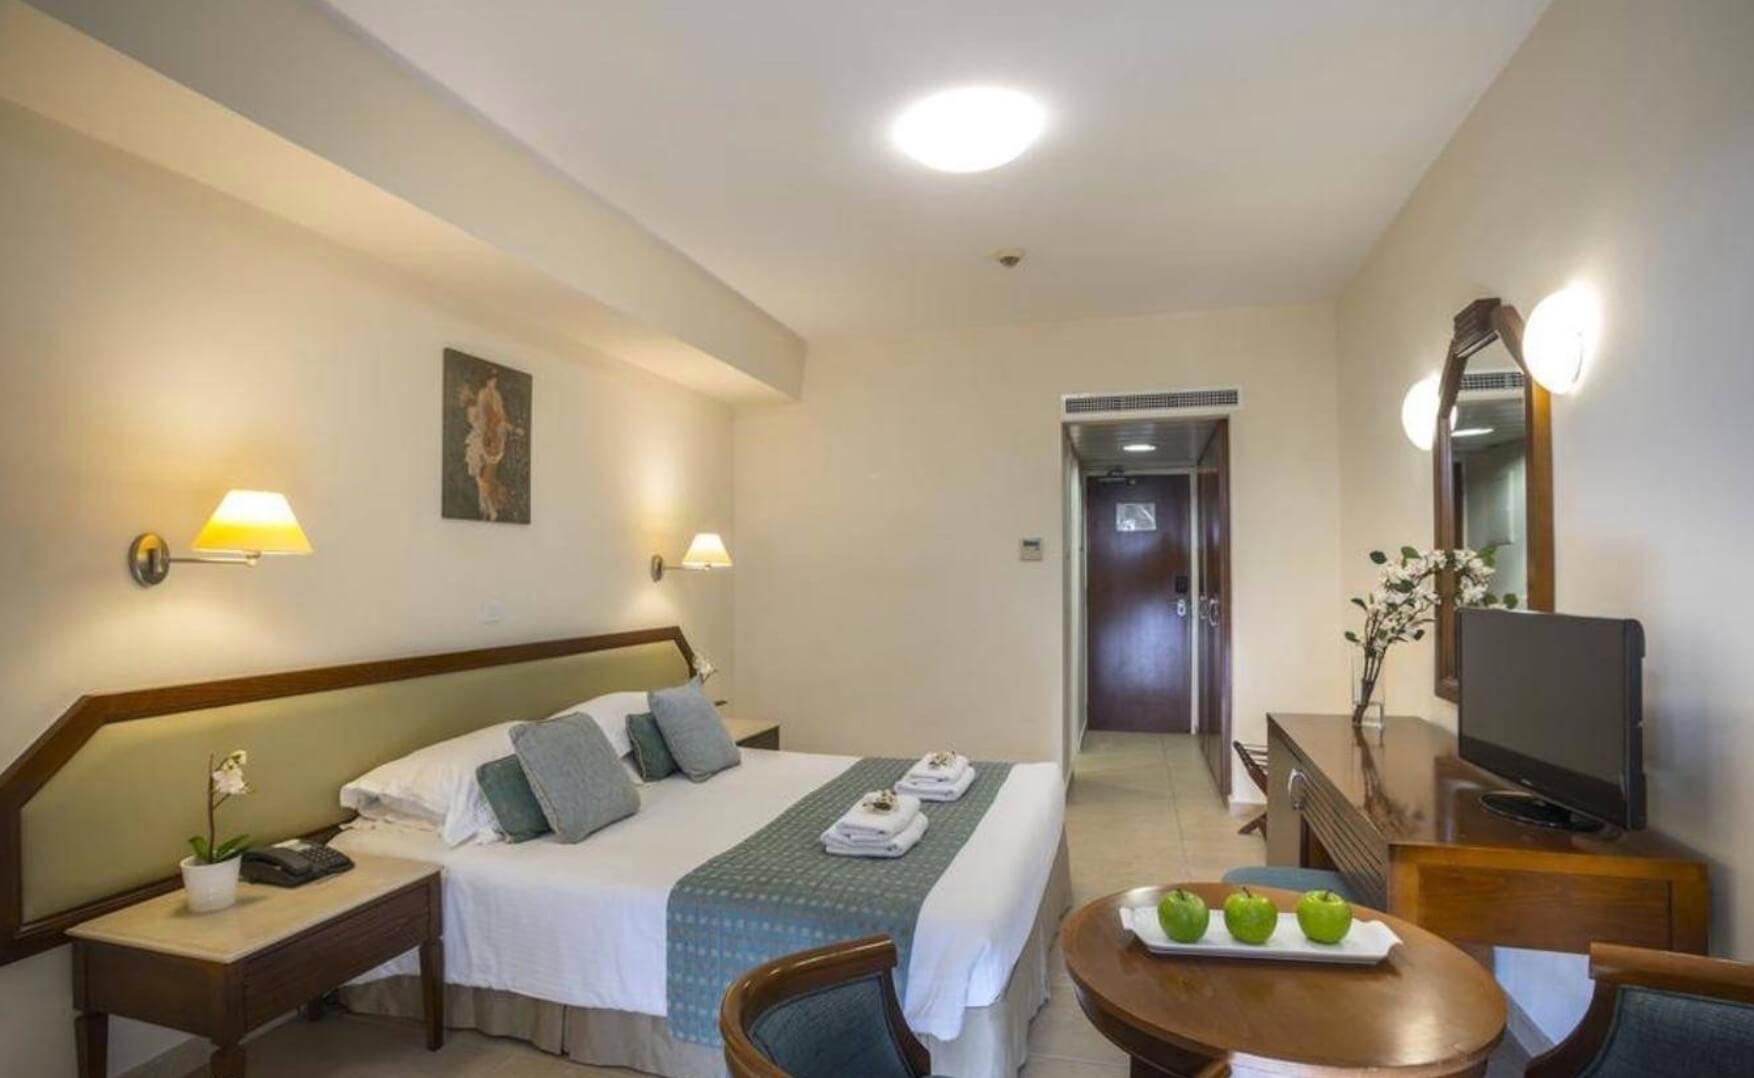 Тур в Пафос в отель Aquamare Beach Hotel & Spa 4* (Кипр) на 7 ночей с 18.05.19 от 65 004 рублей (BB) на двоих